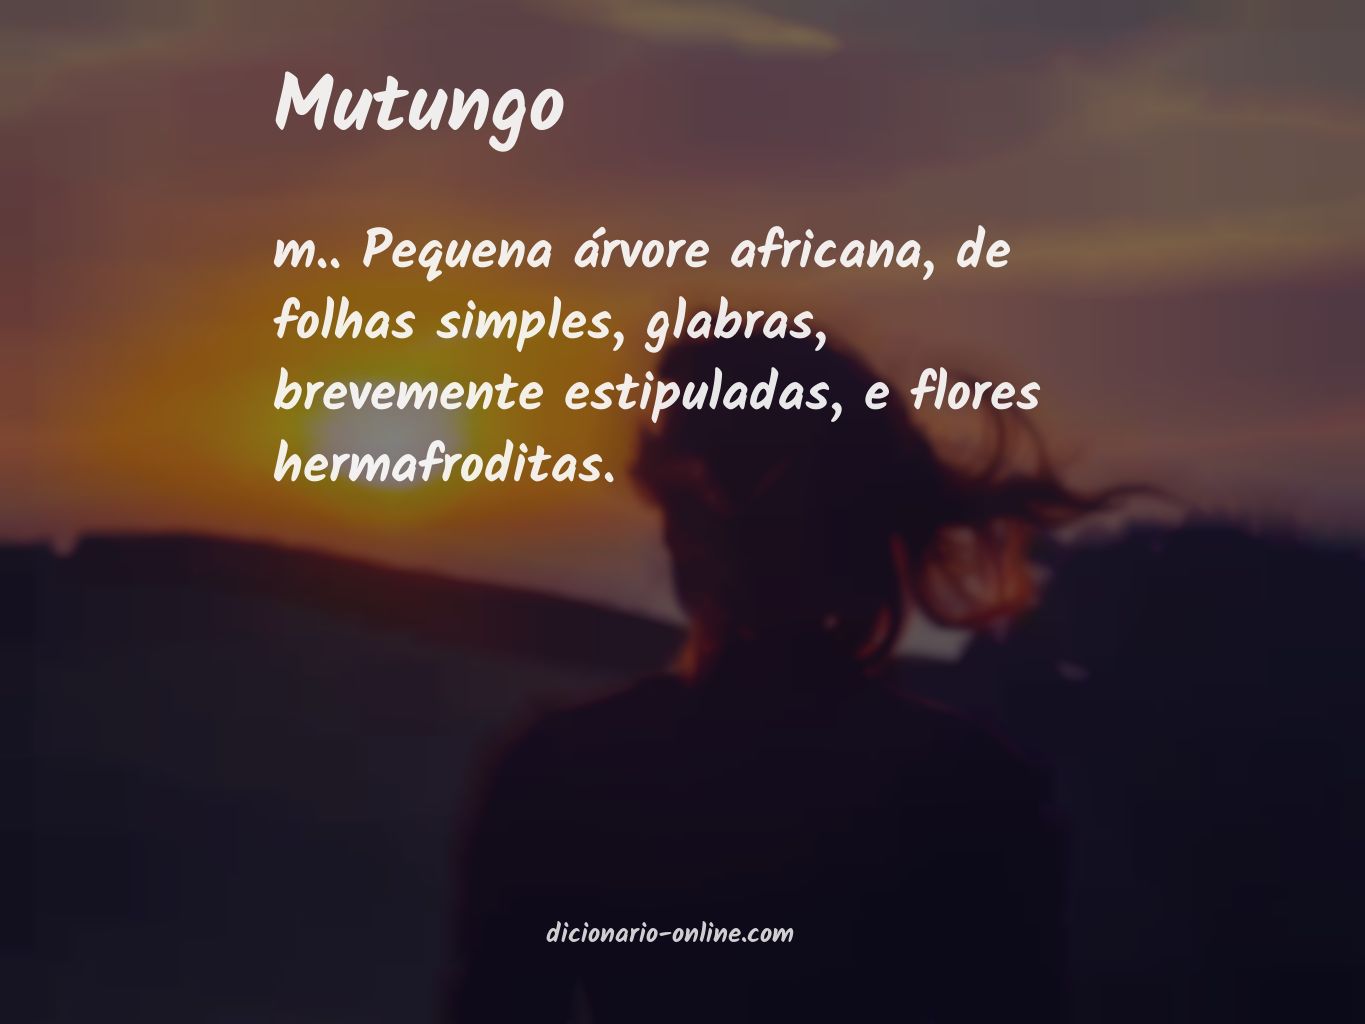 Significado de mutungo